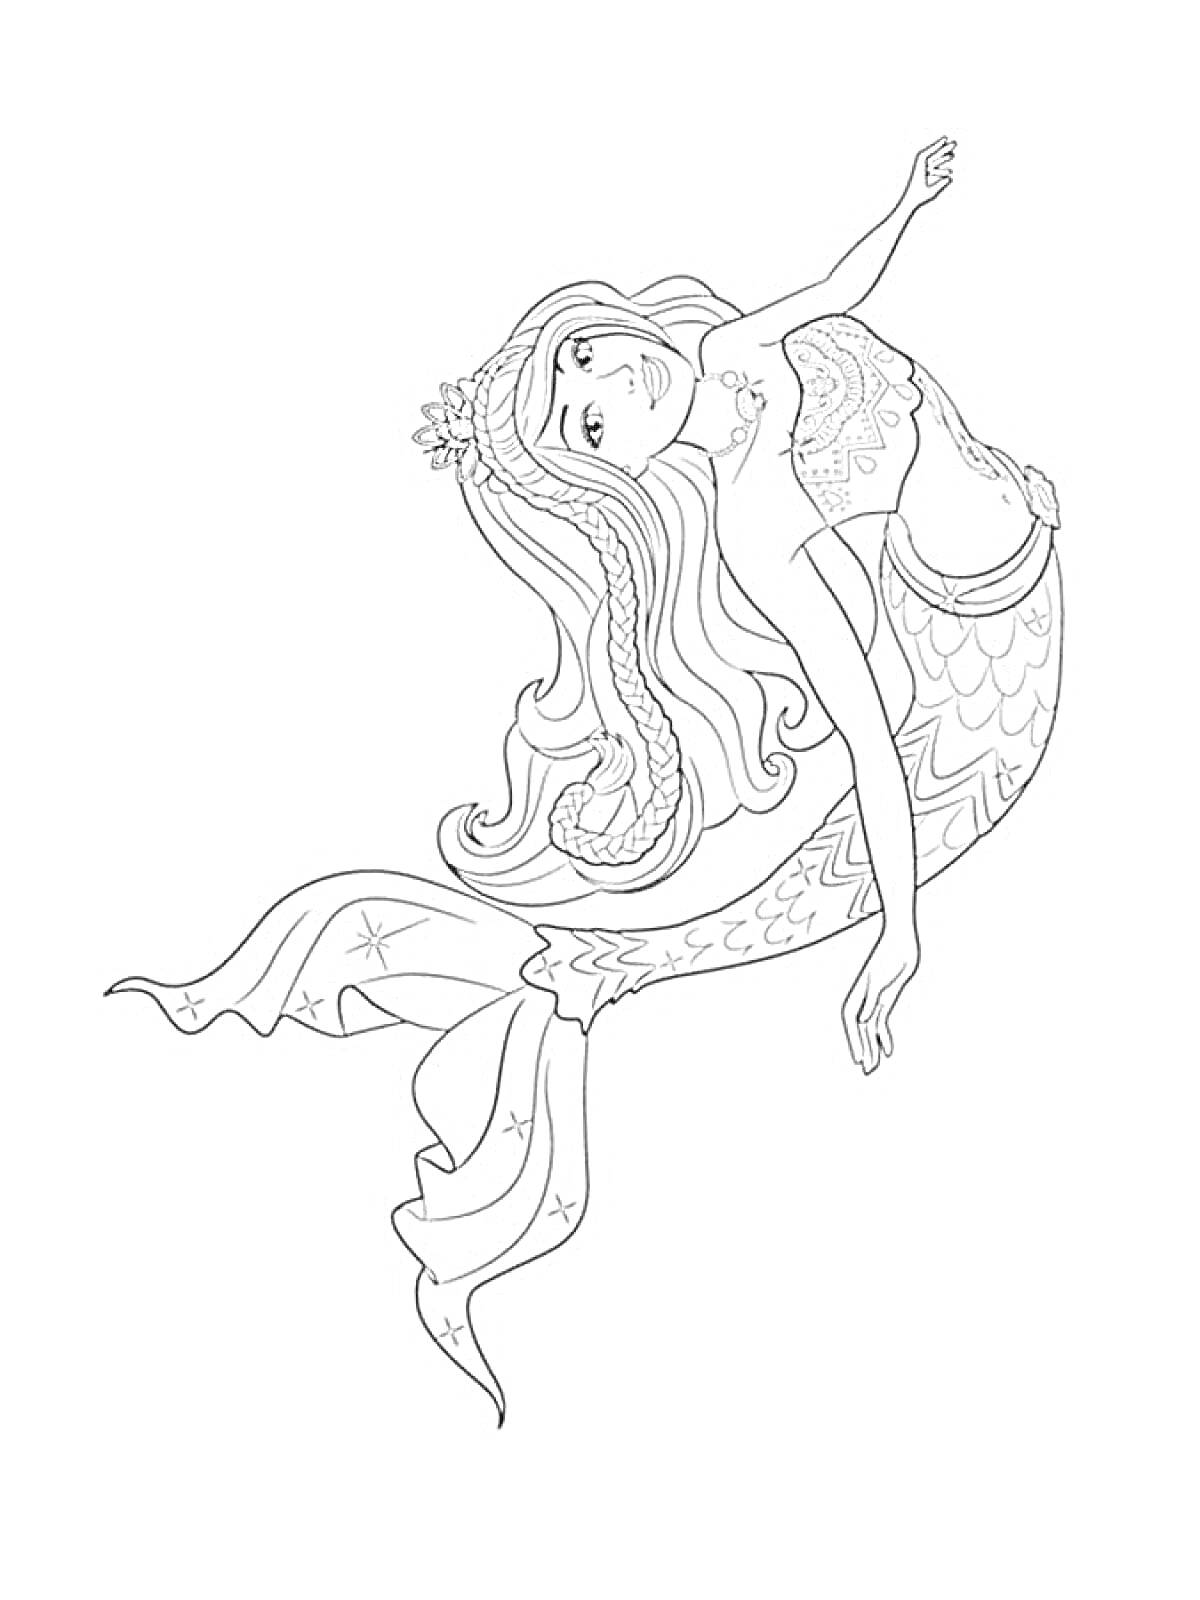 Раскраска Барби-русалка с длинными волосами, украшением на голове и чешуей на хвосте